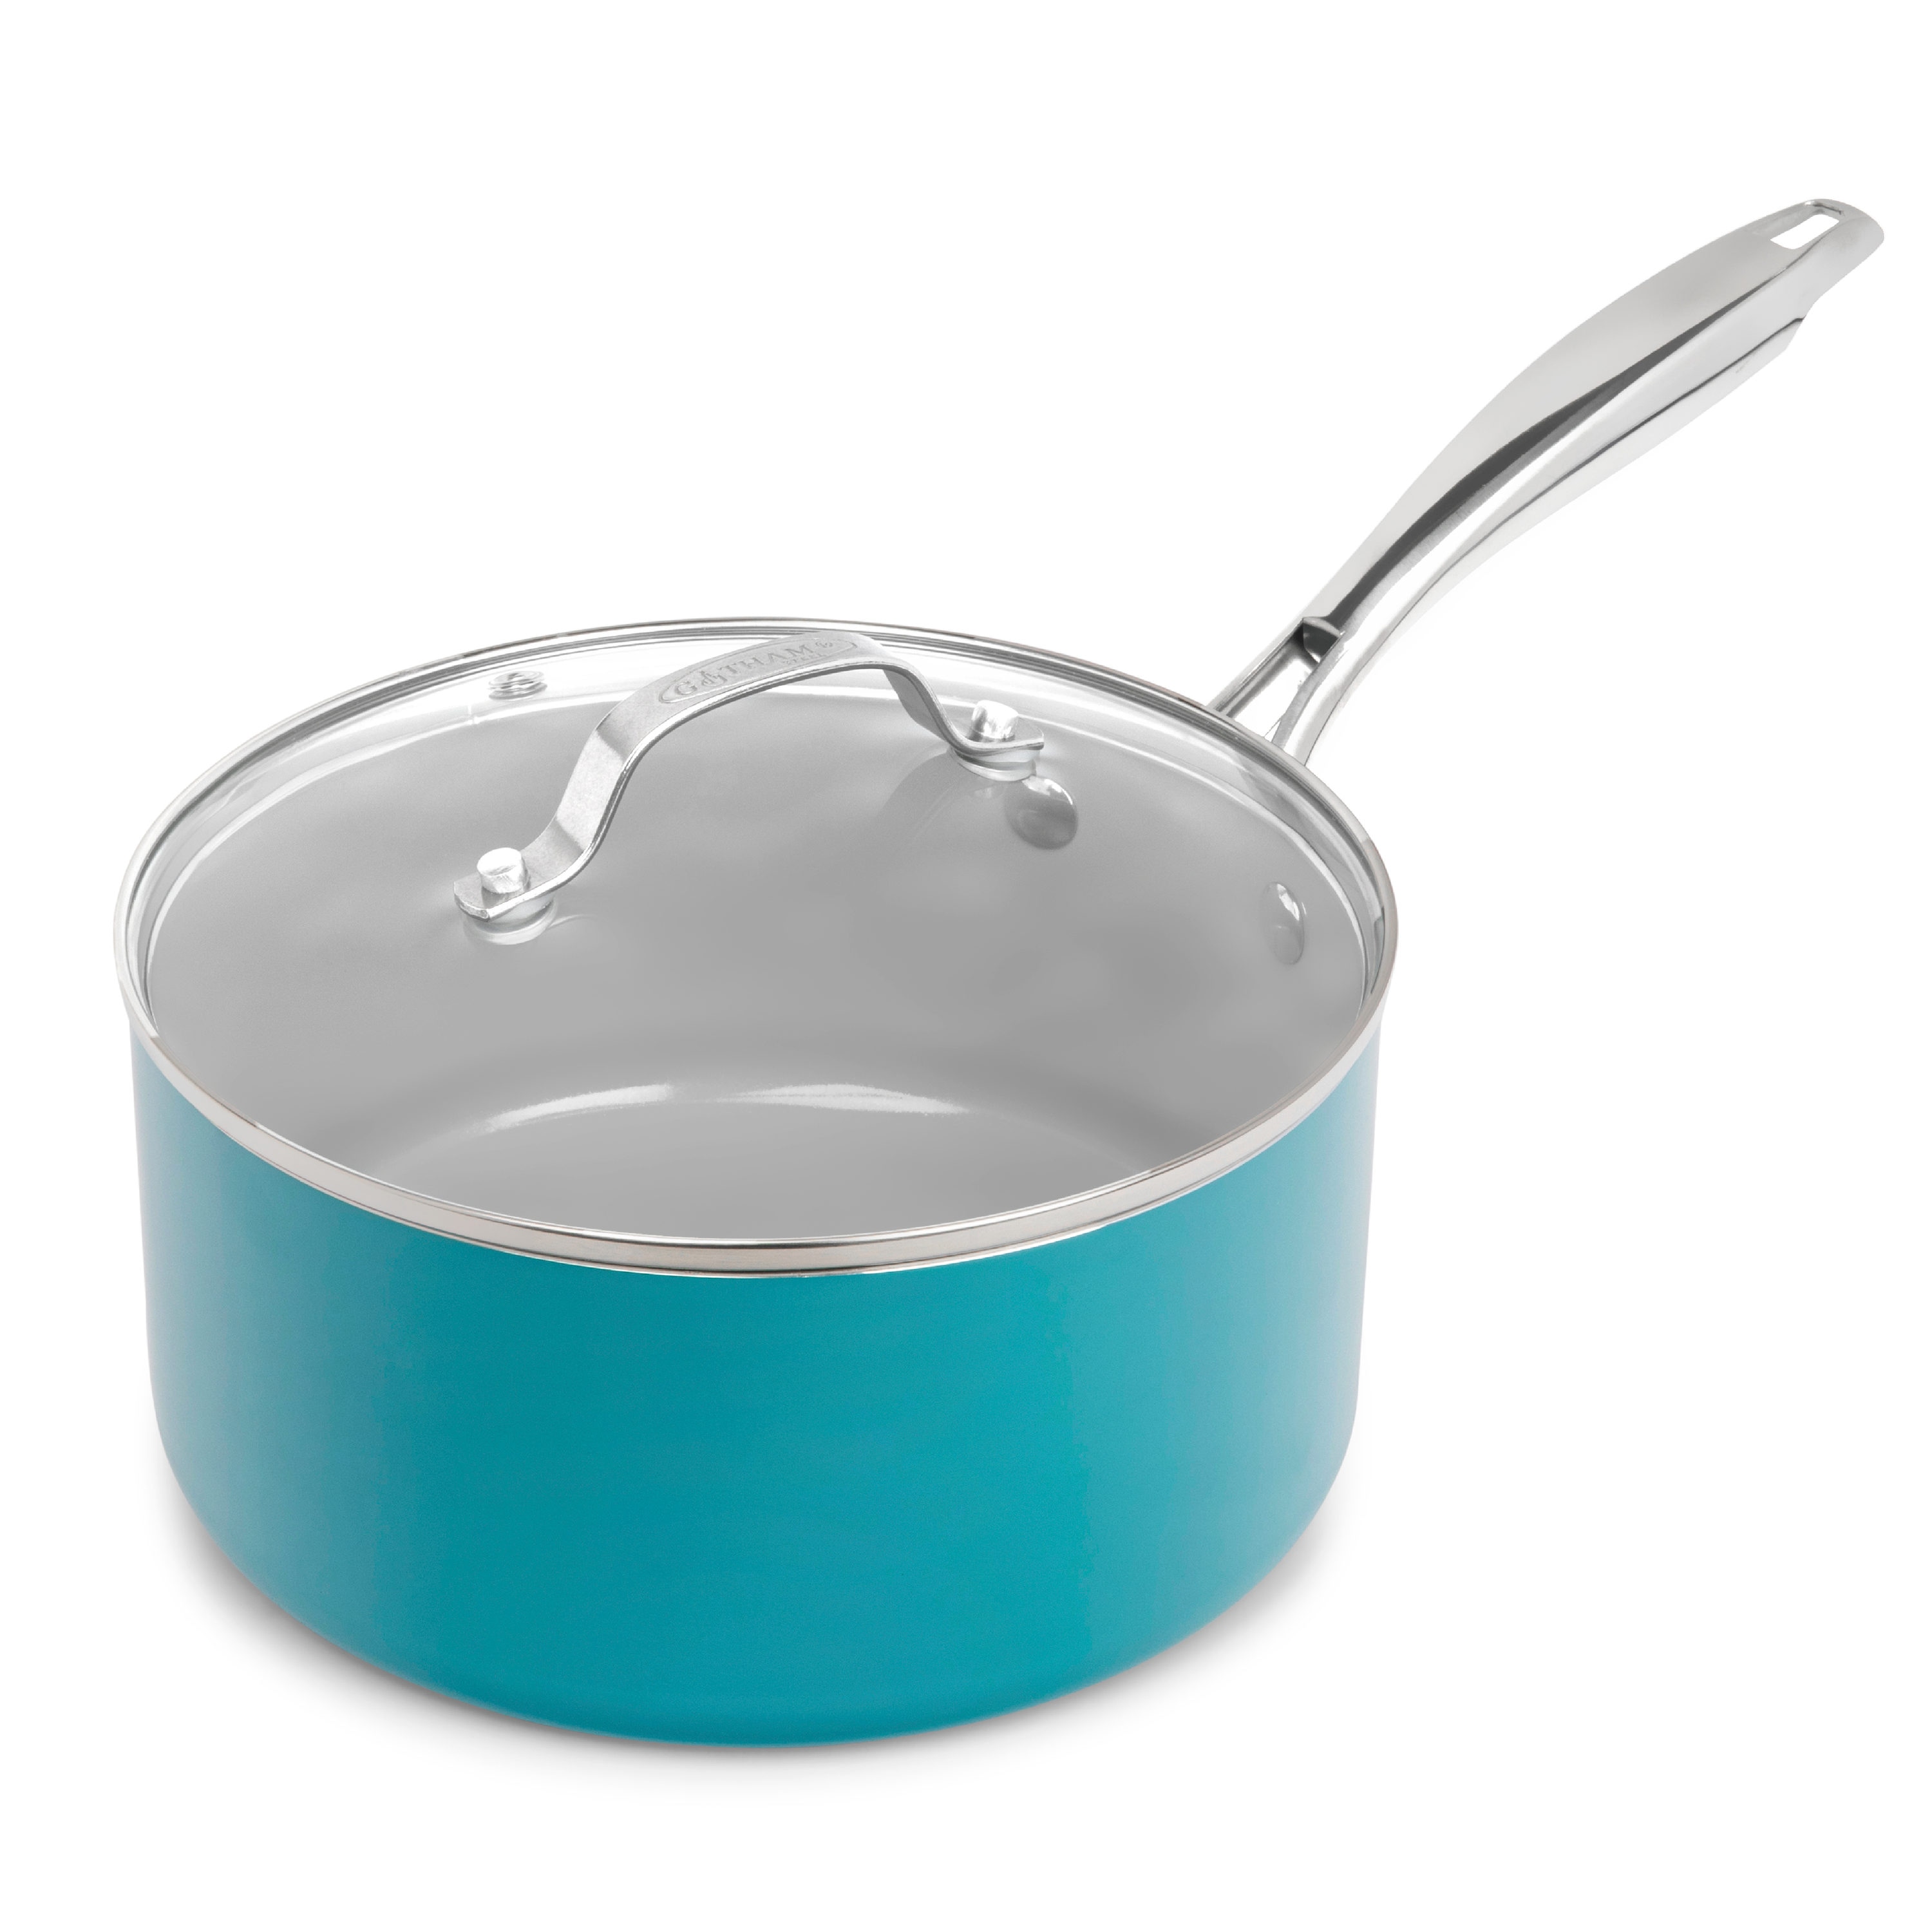 Gotham Steel Aqua Blue 5-qt Multipurpose Pasta Pot with Strainer